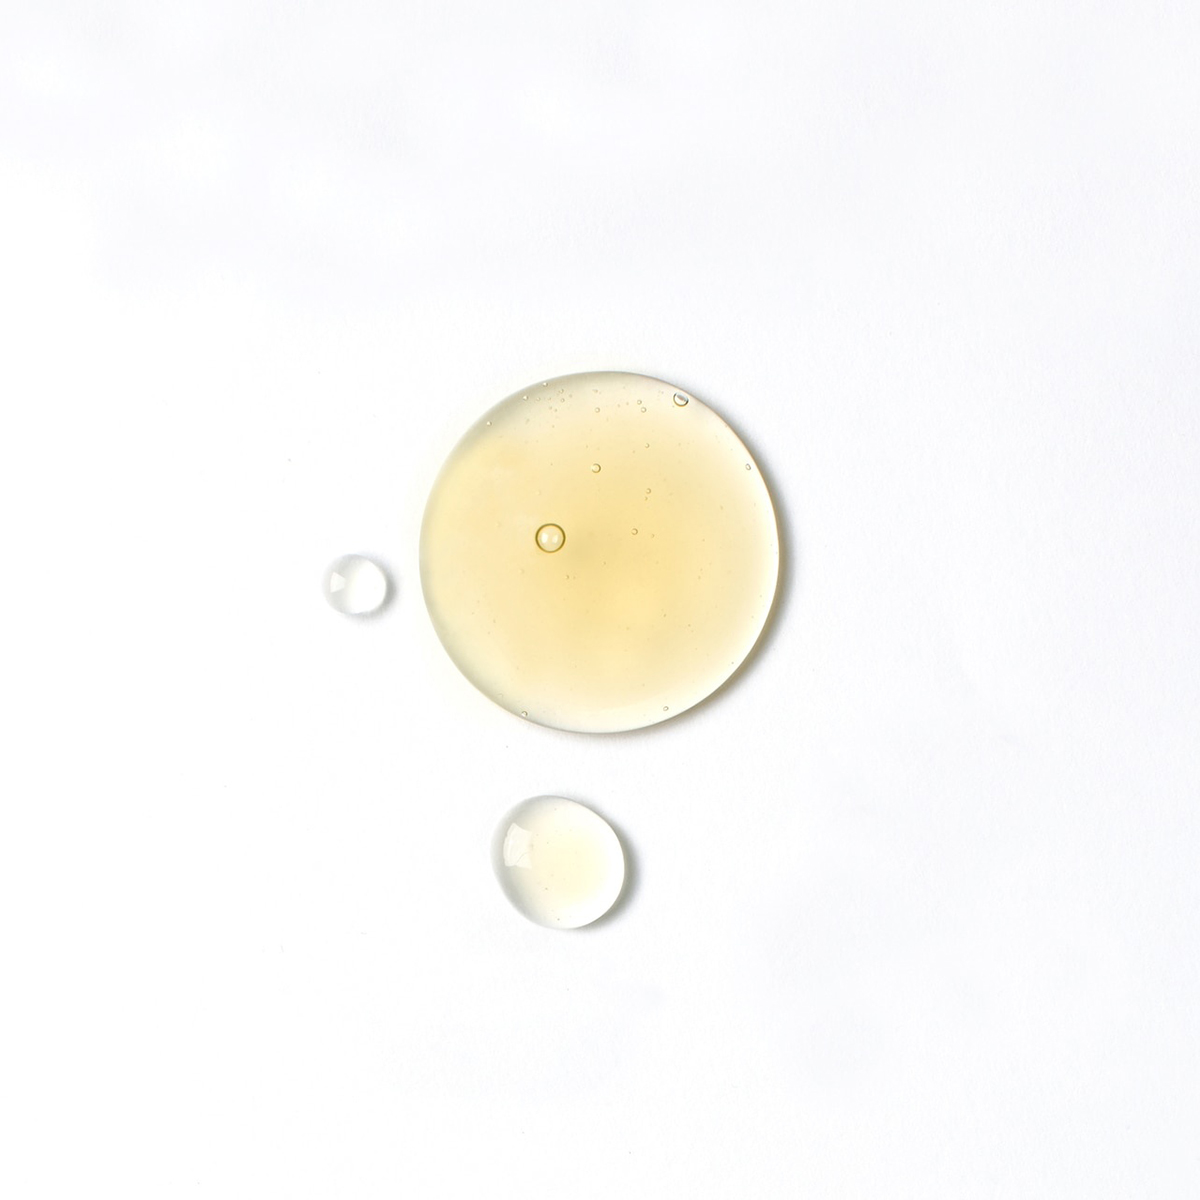 The Organic Pharmacy Lemon & Eucalyptus Shower Gel